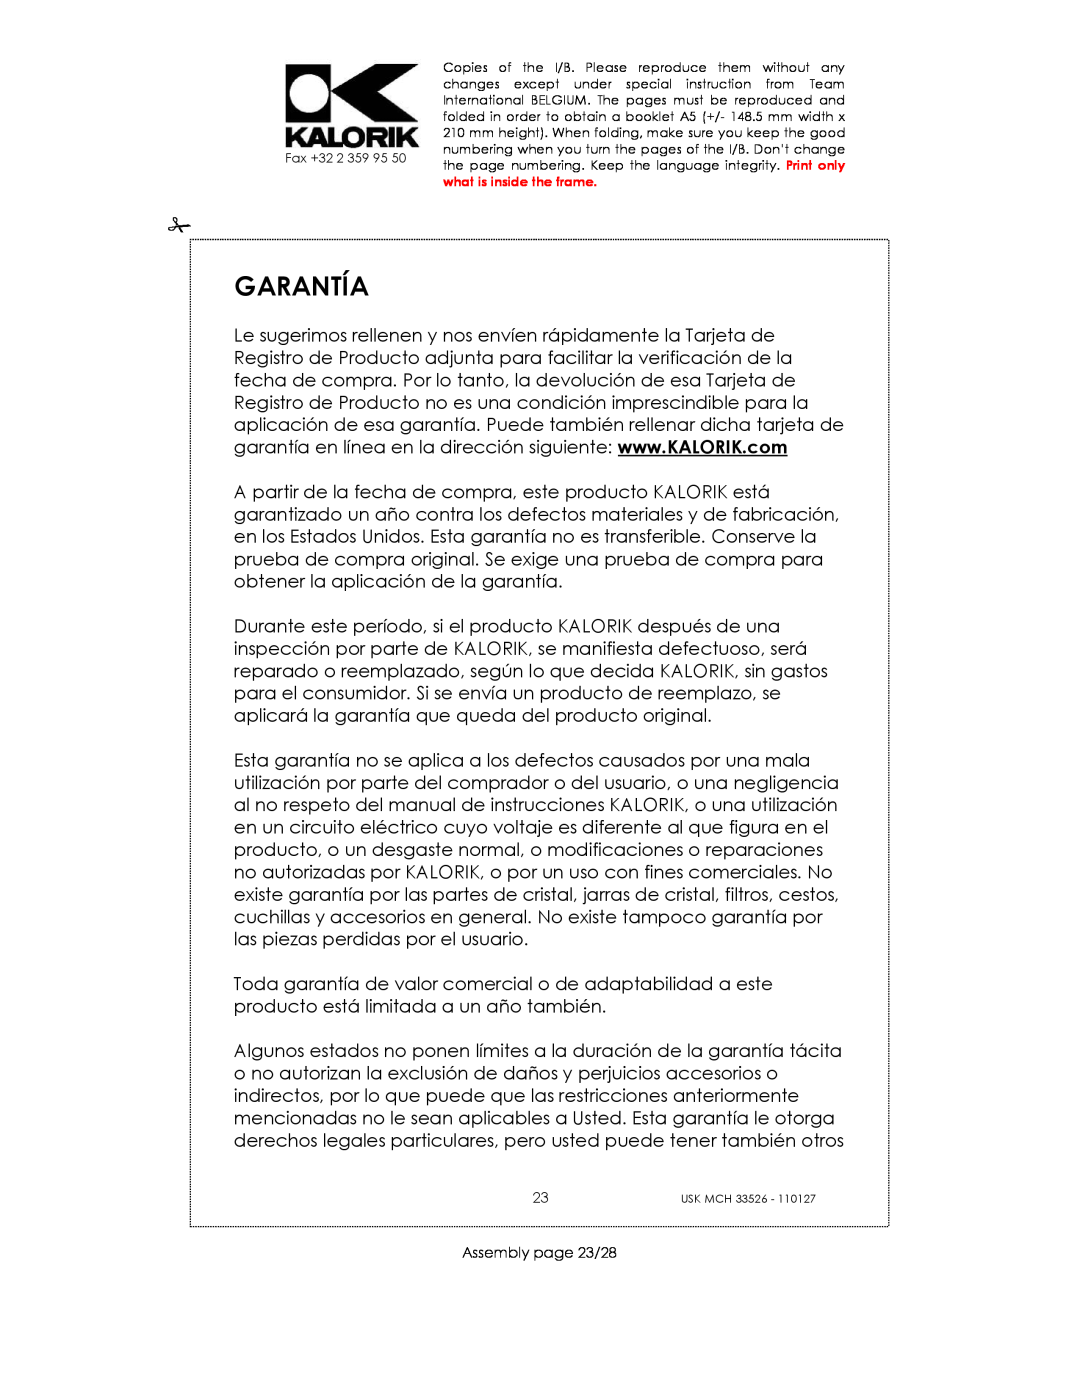 Kalorik USK MCH 33526 manual Garantía, Assembly page 23/28 